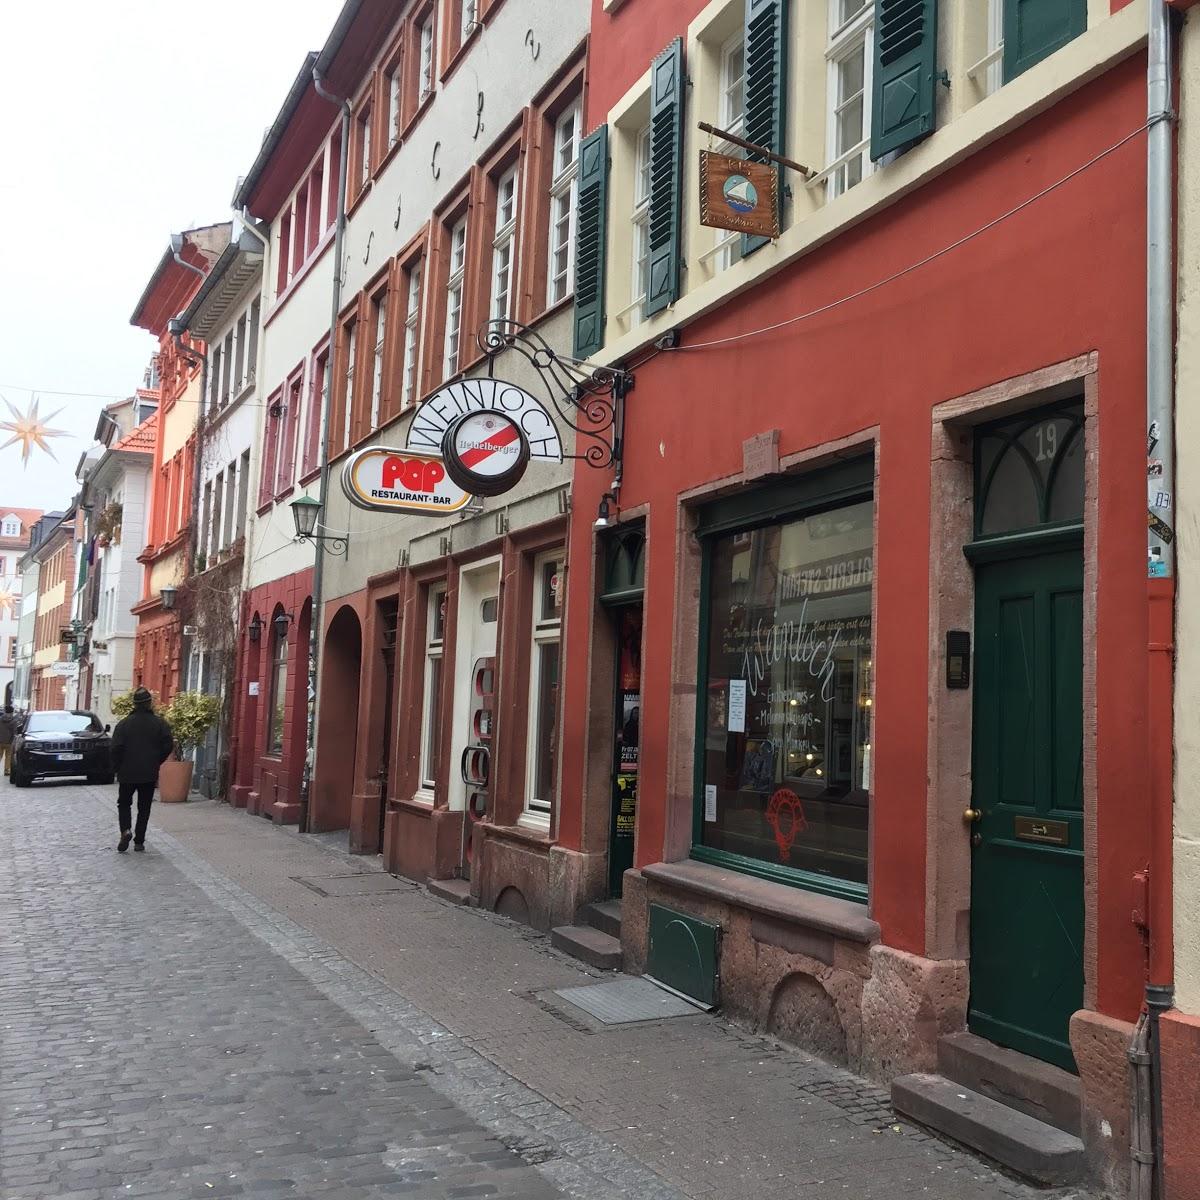 Restaurant "Weinloch" in Heidelberg